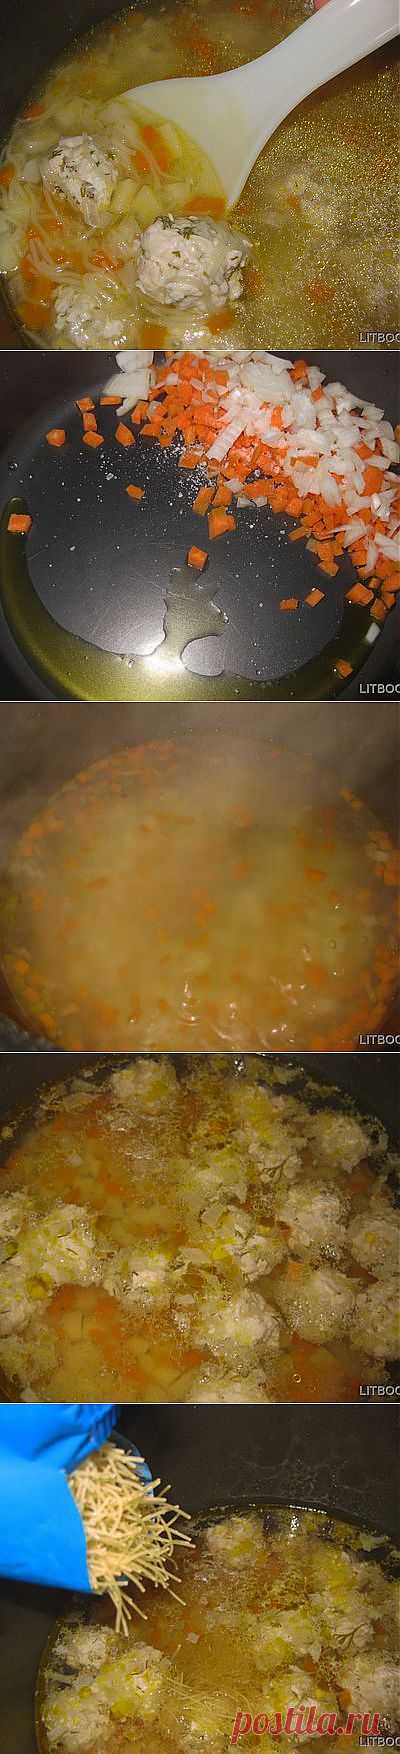 Как приготовить суп с фрикадельками в мультиварке | Статьи и Обзоры | Экспертоза